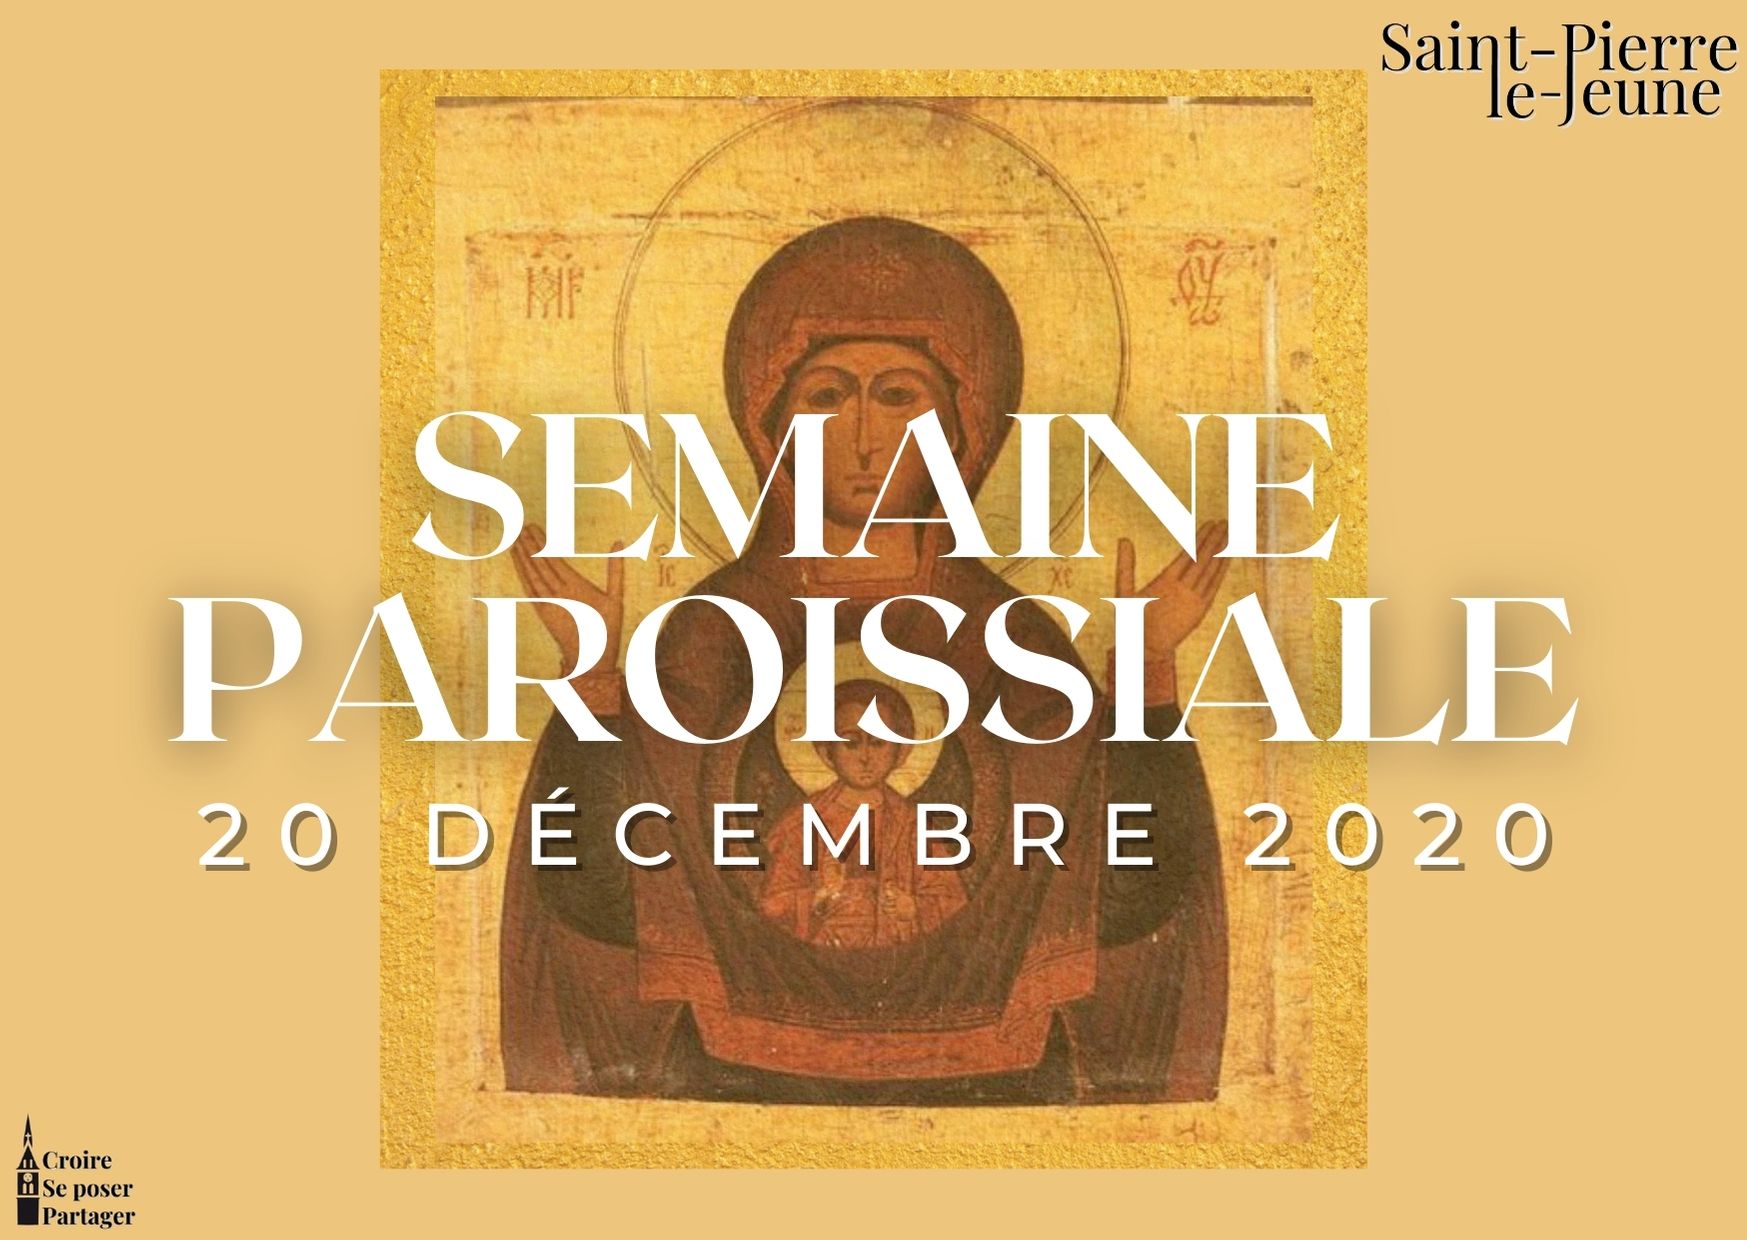 Semaine paroissiale - 20 décembre 2020